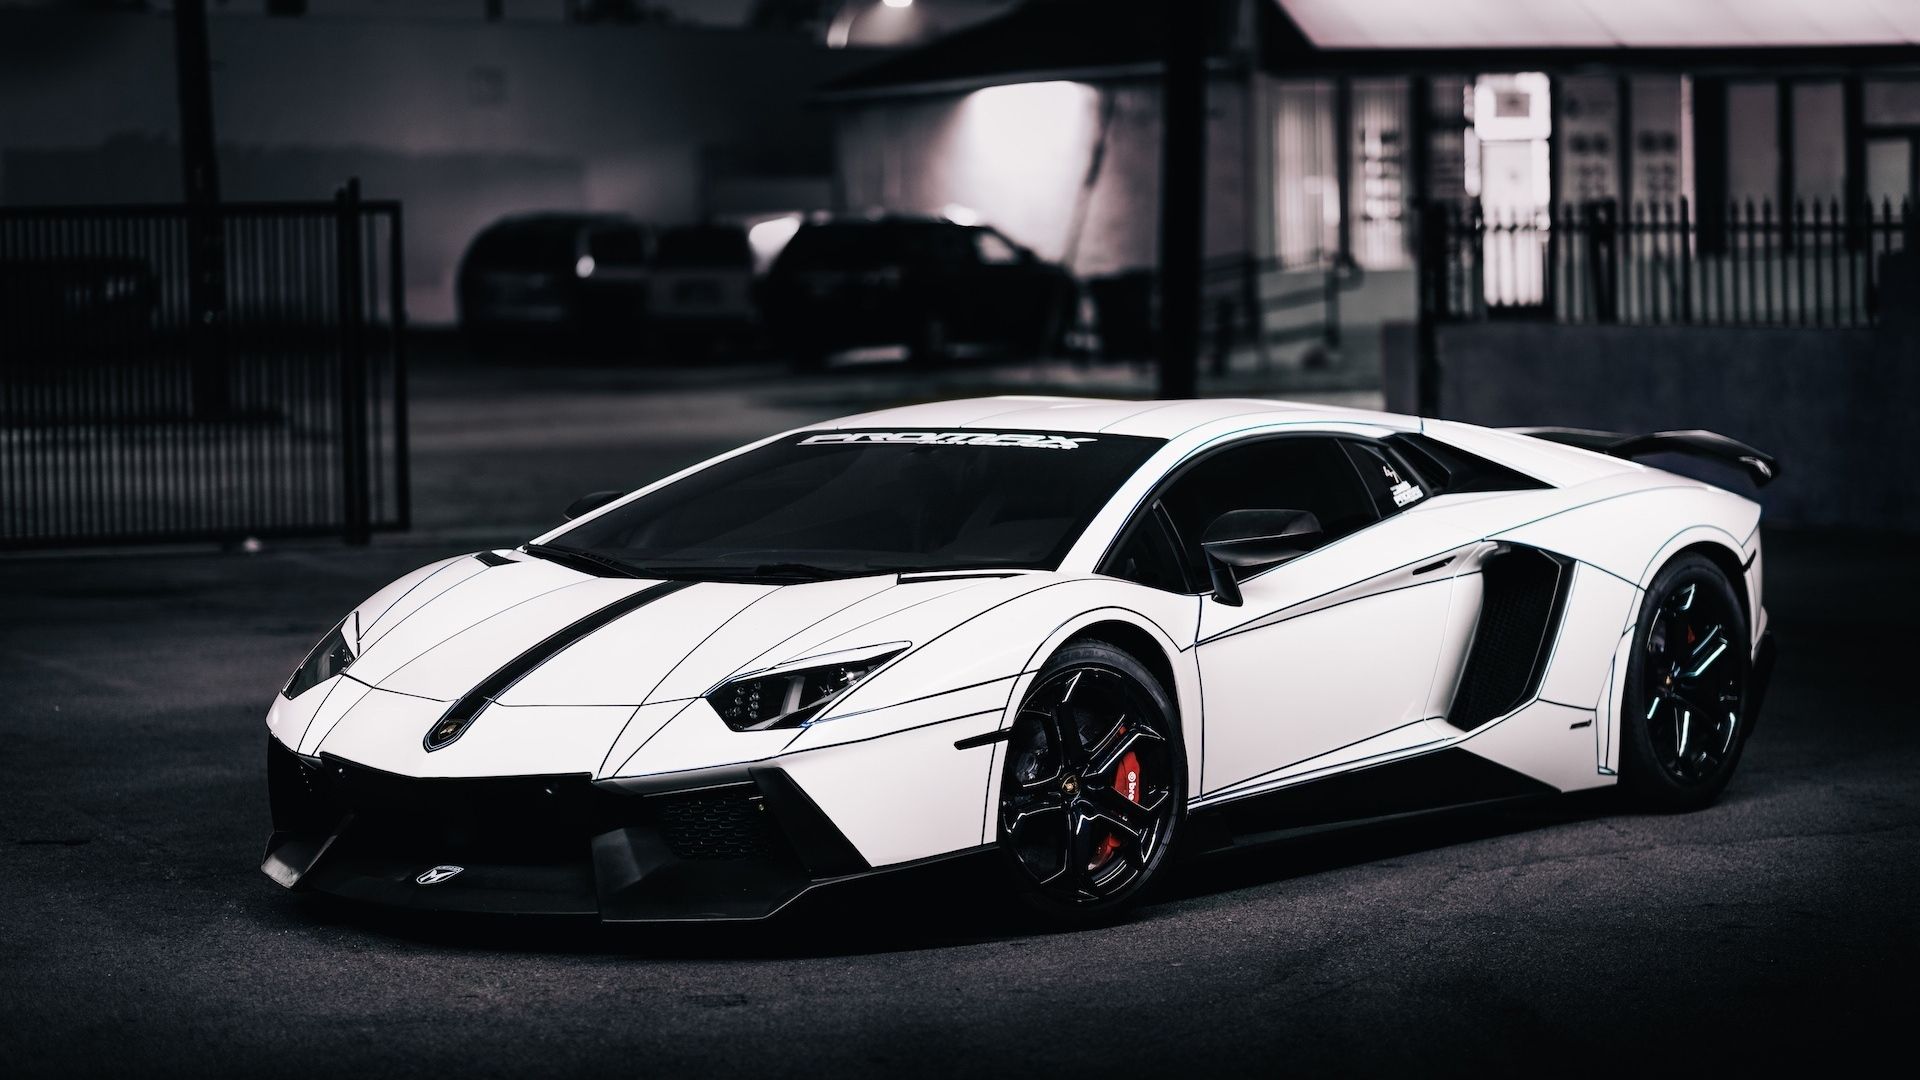 Download Black And White Lamborghini Wallpaper Gallery